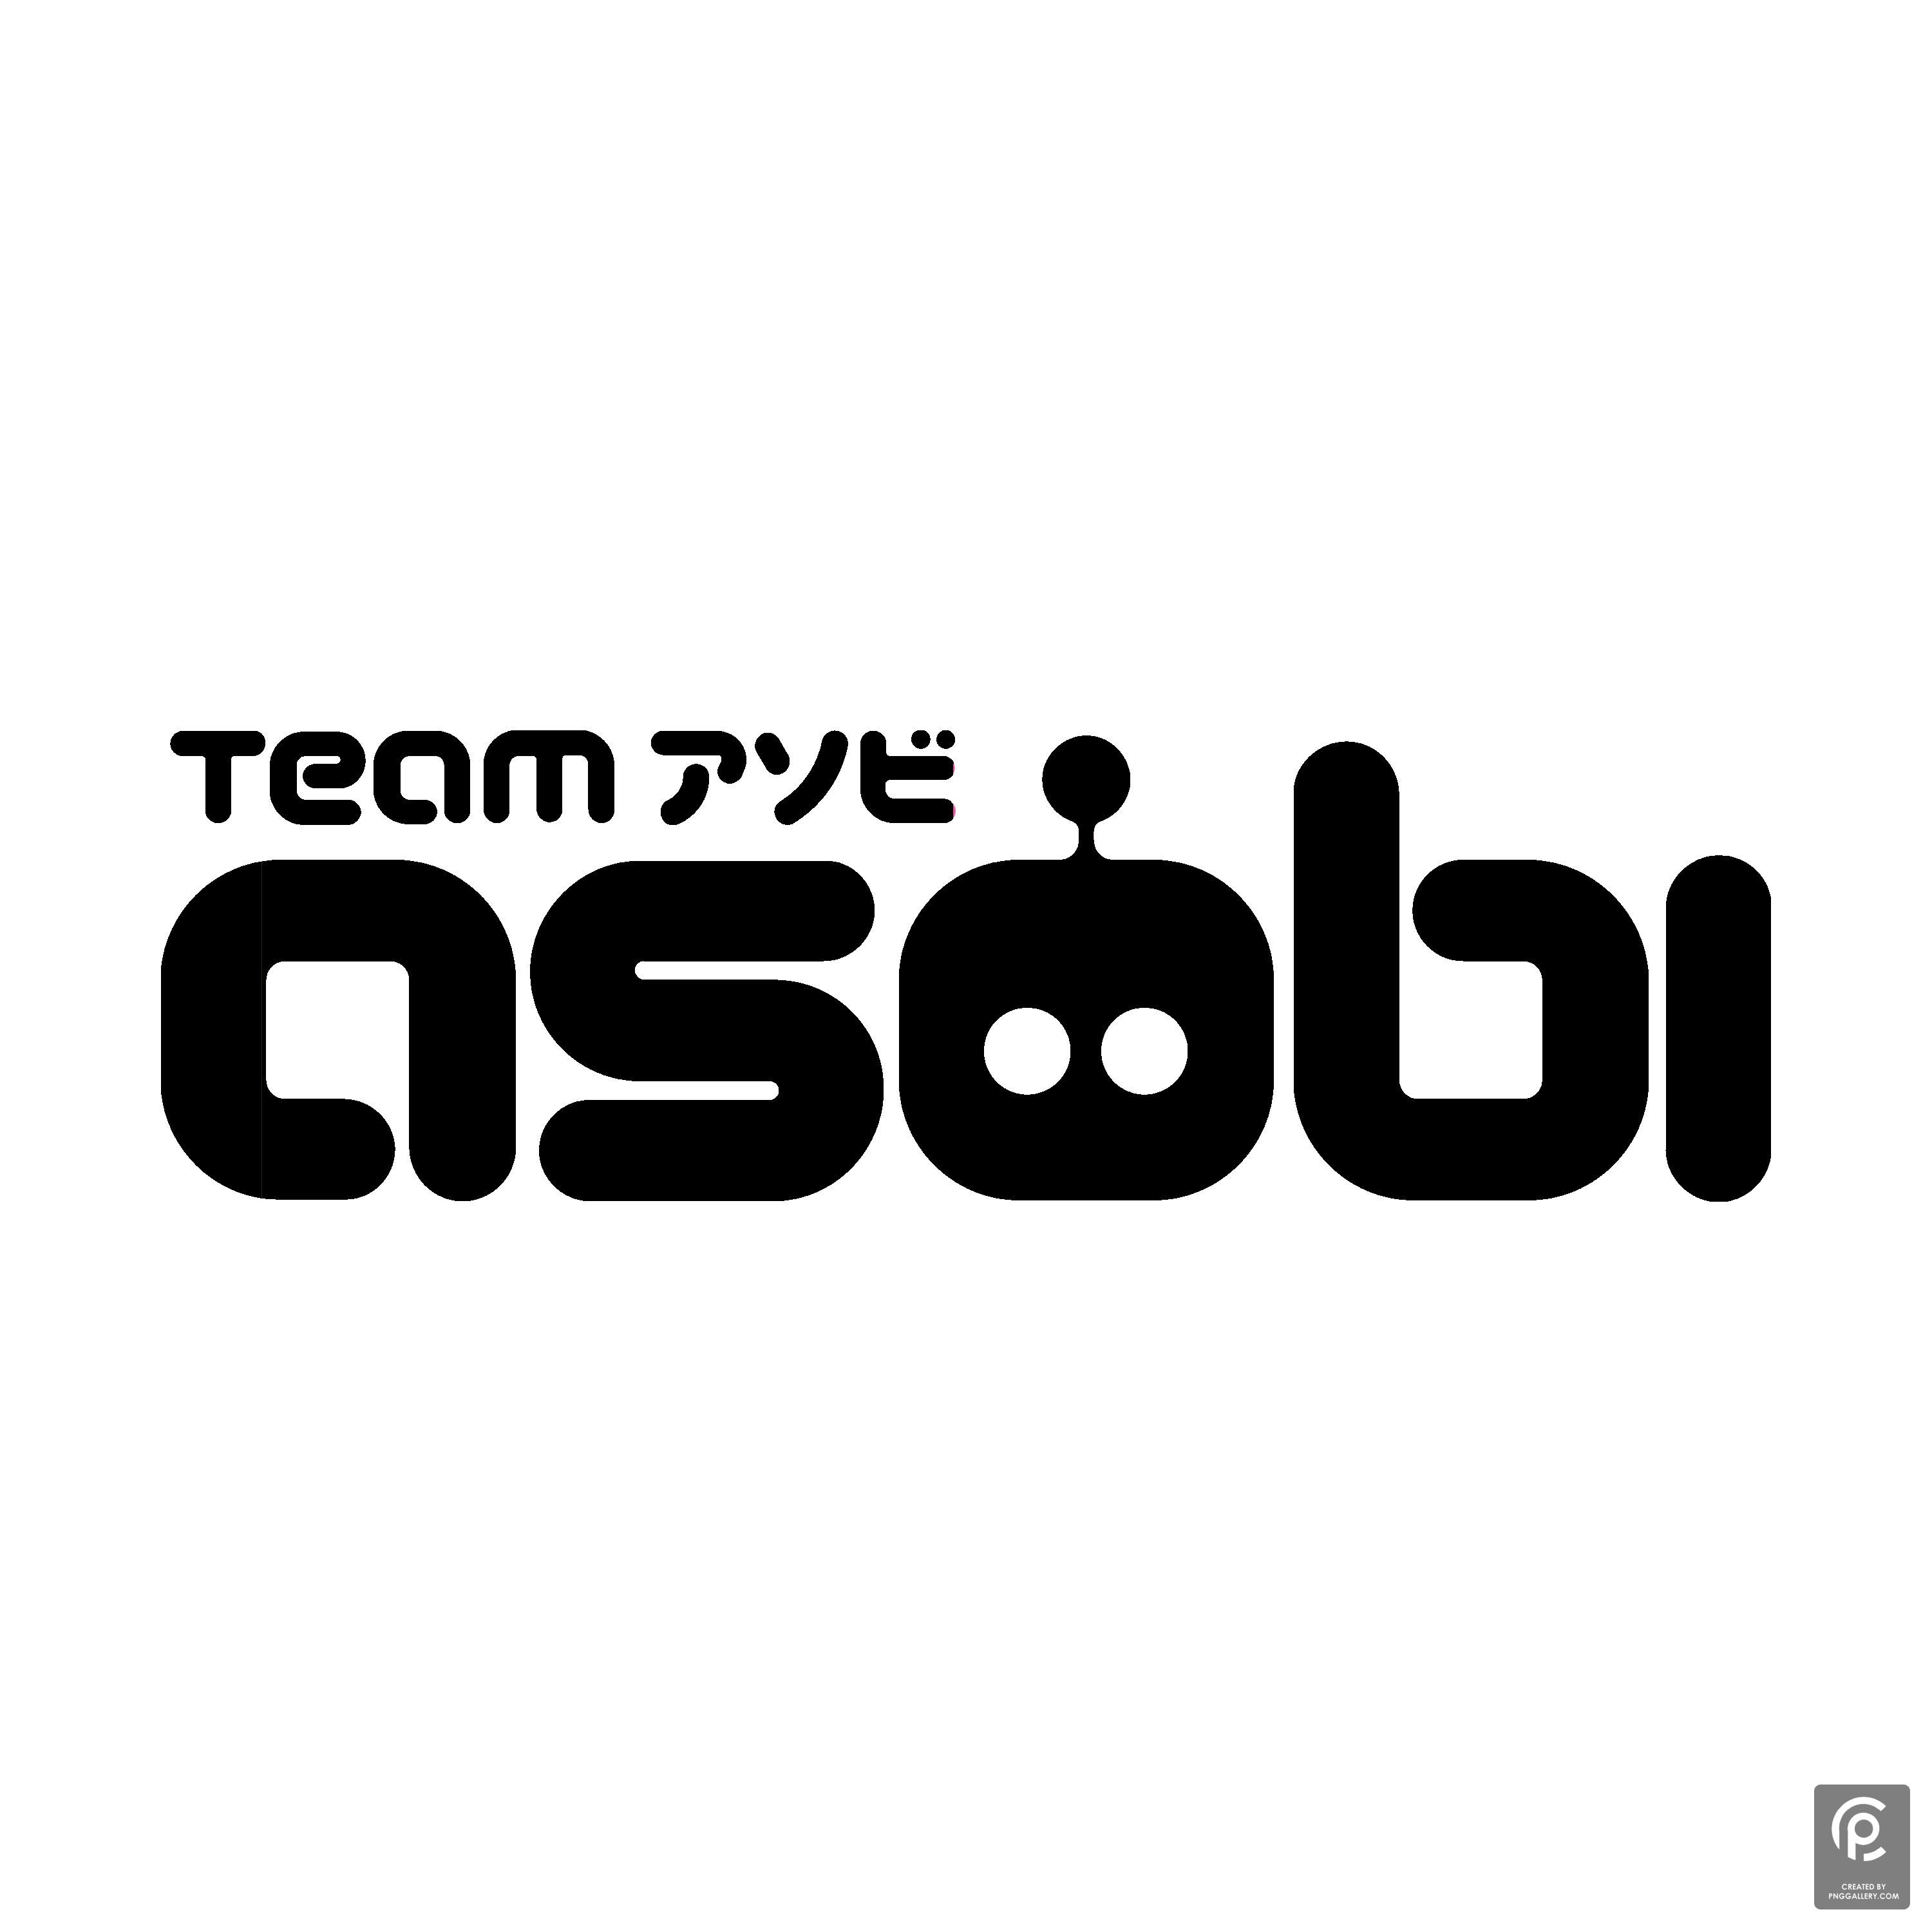 Team Asobi Logo Transparent Gallery